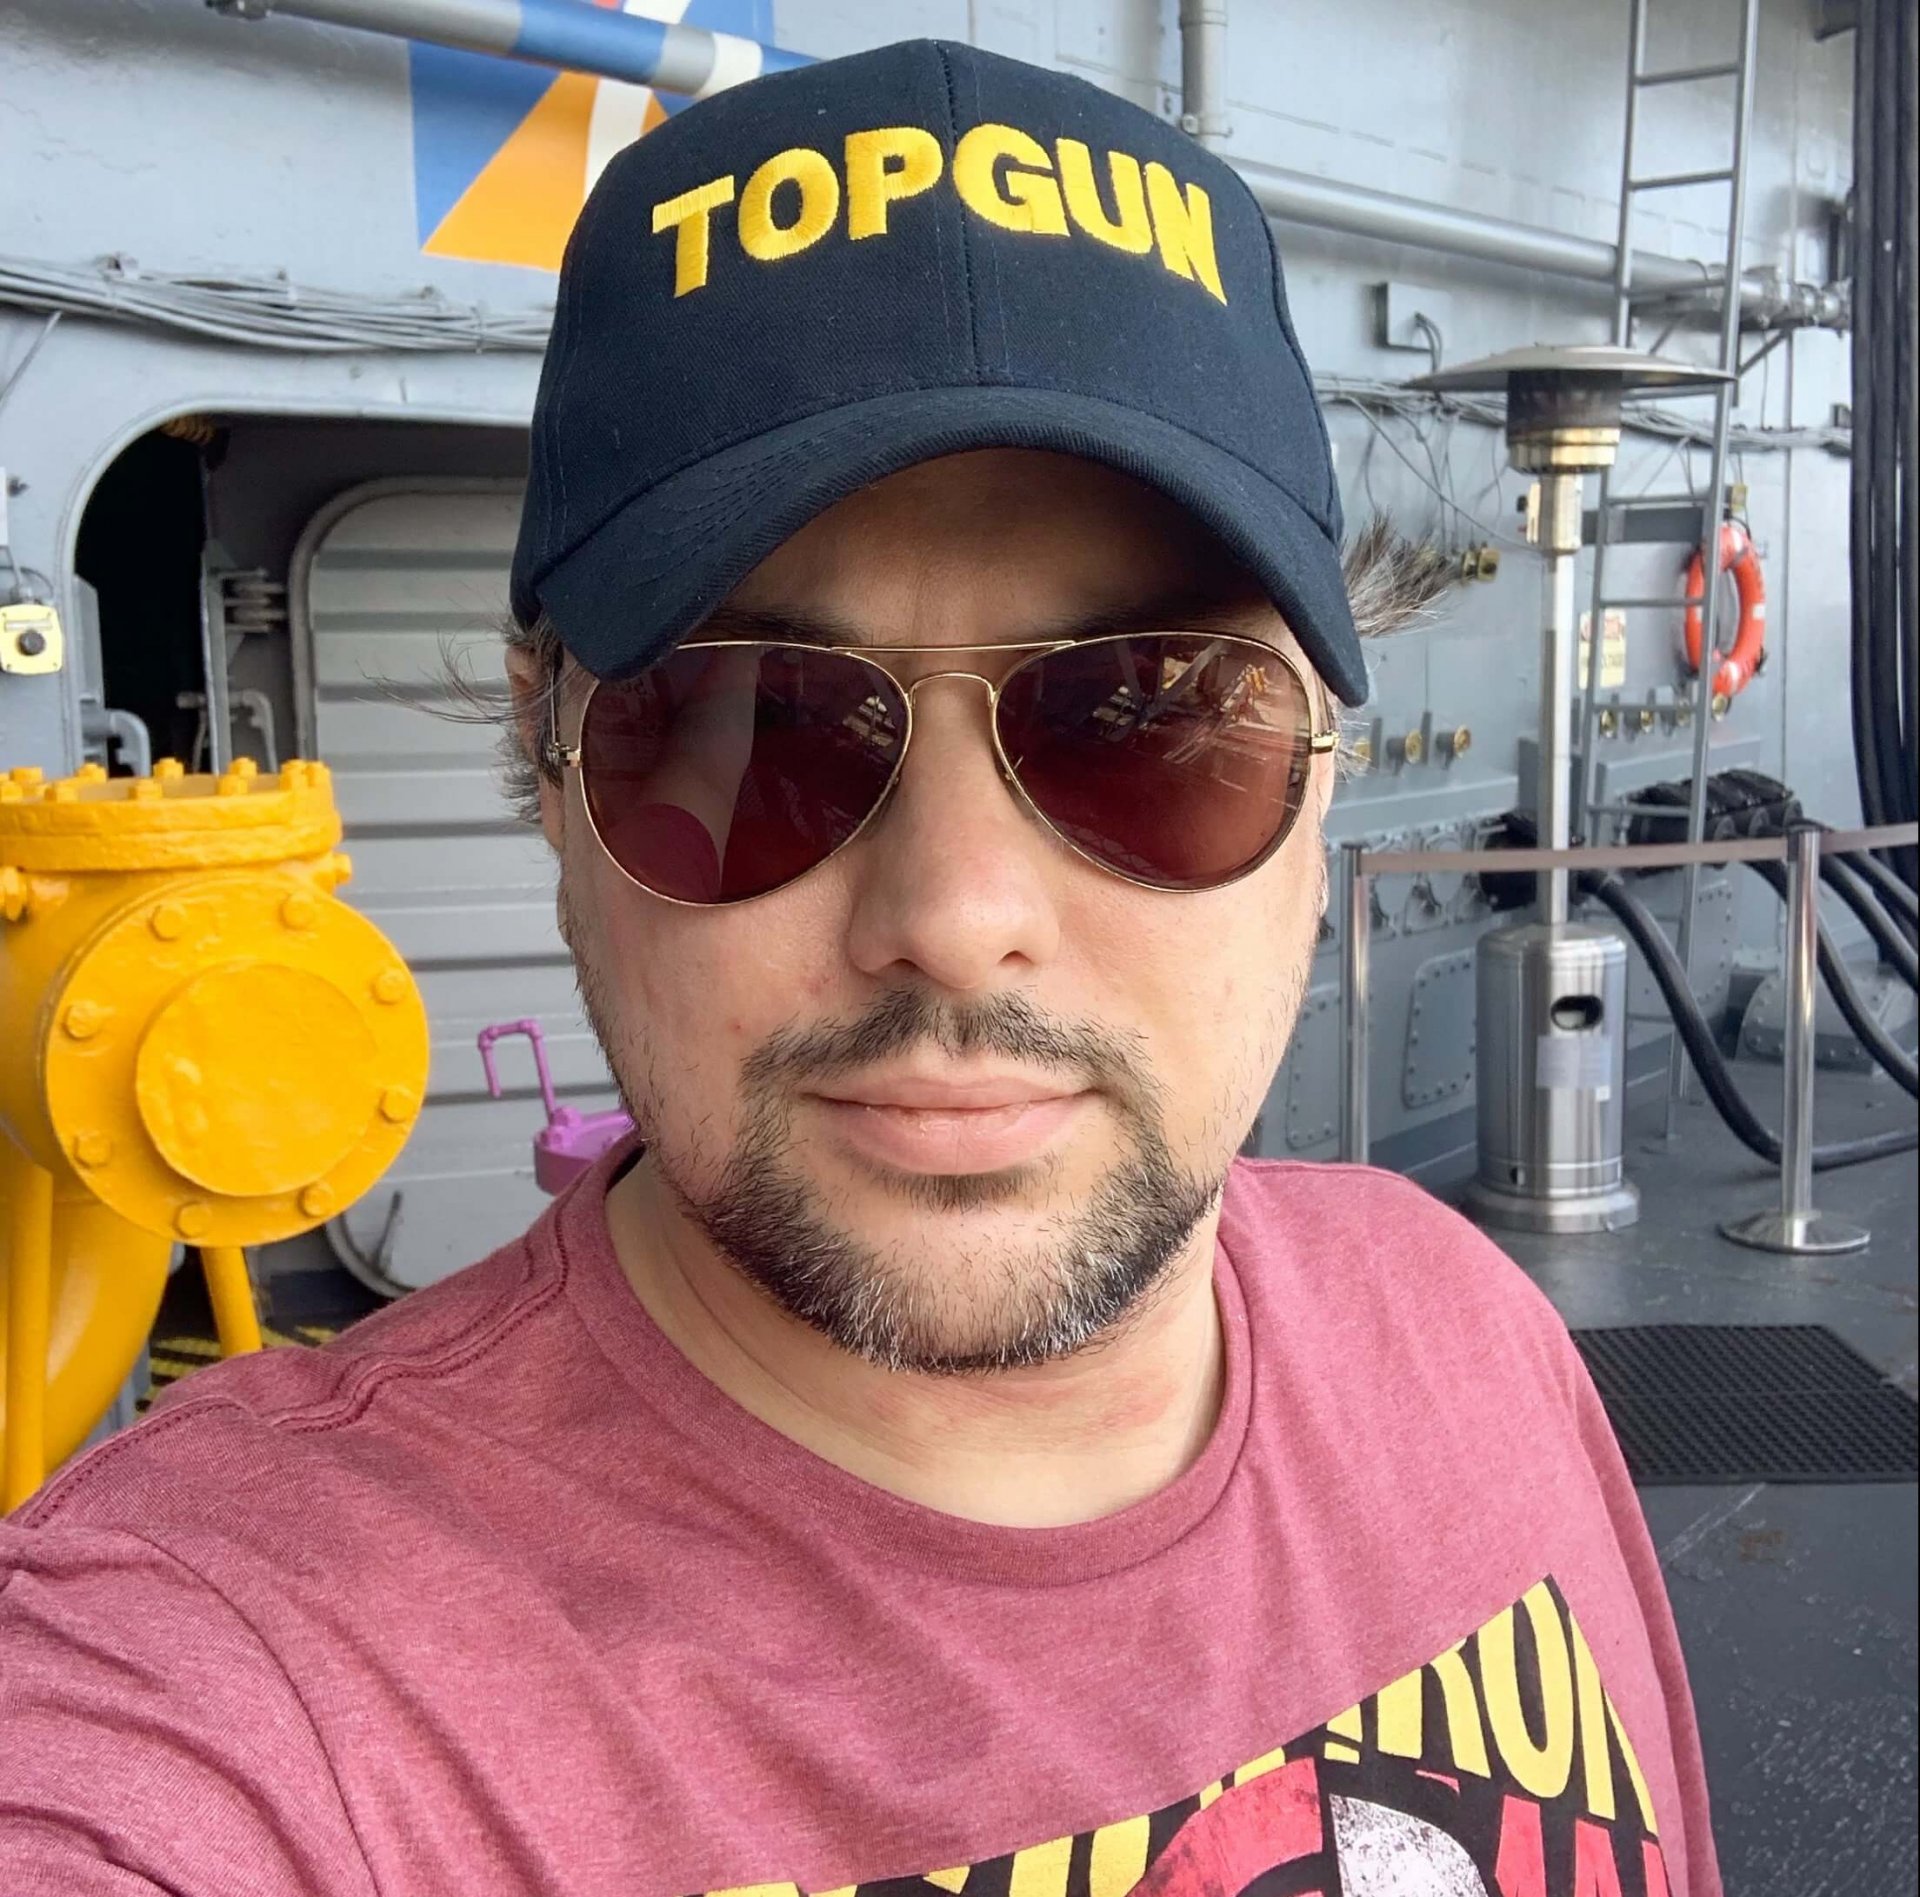 Esse sou eu - perfeitamente "topgunizado" ainda a bordo do USS Midway (crédito: Renan Martins Frade)